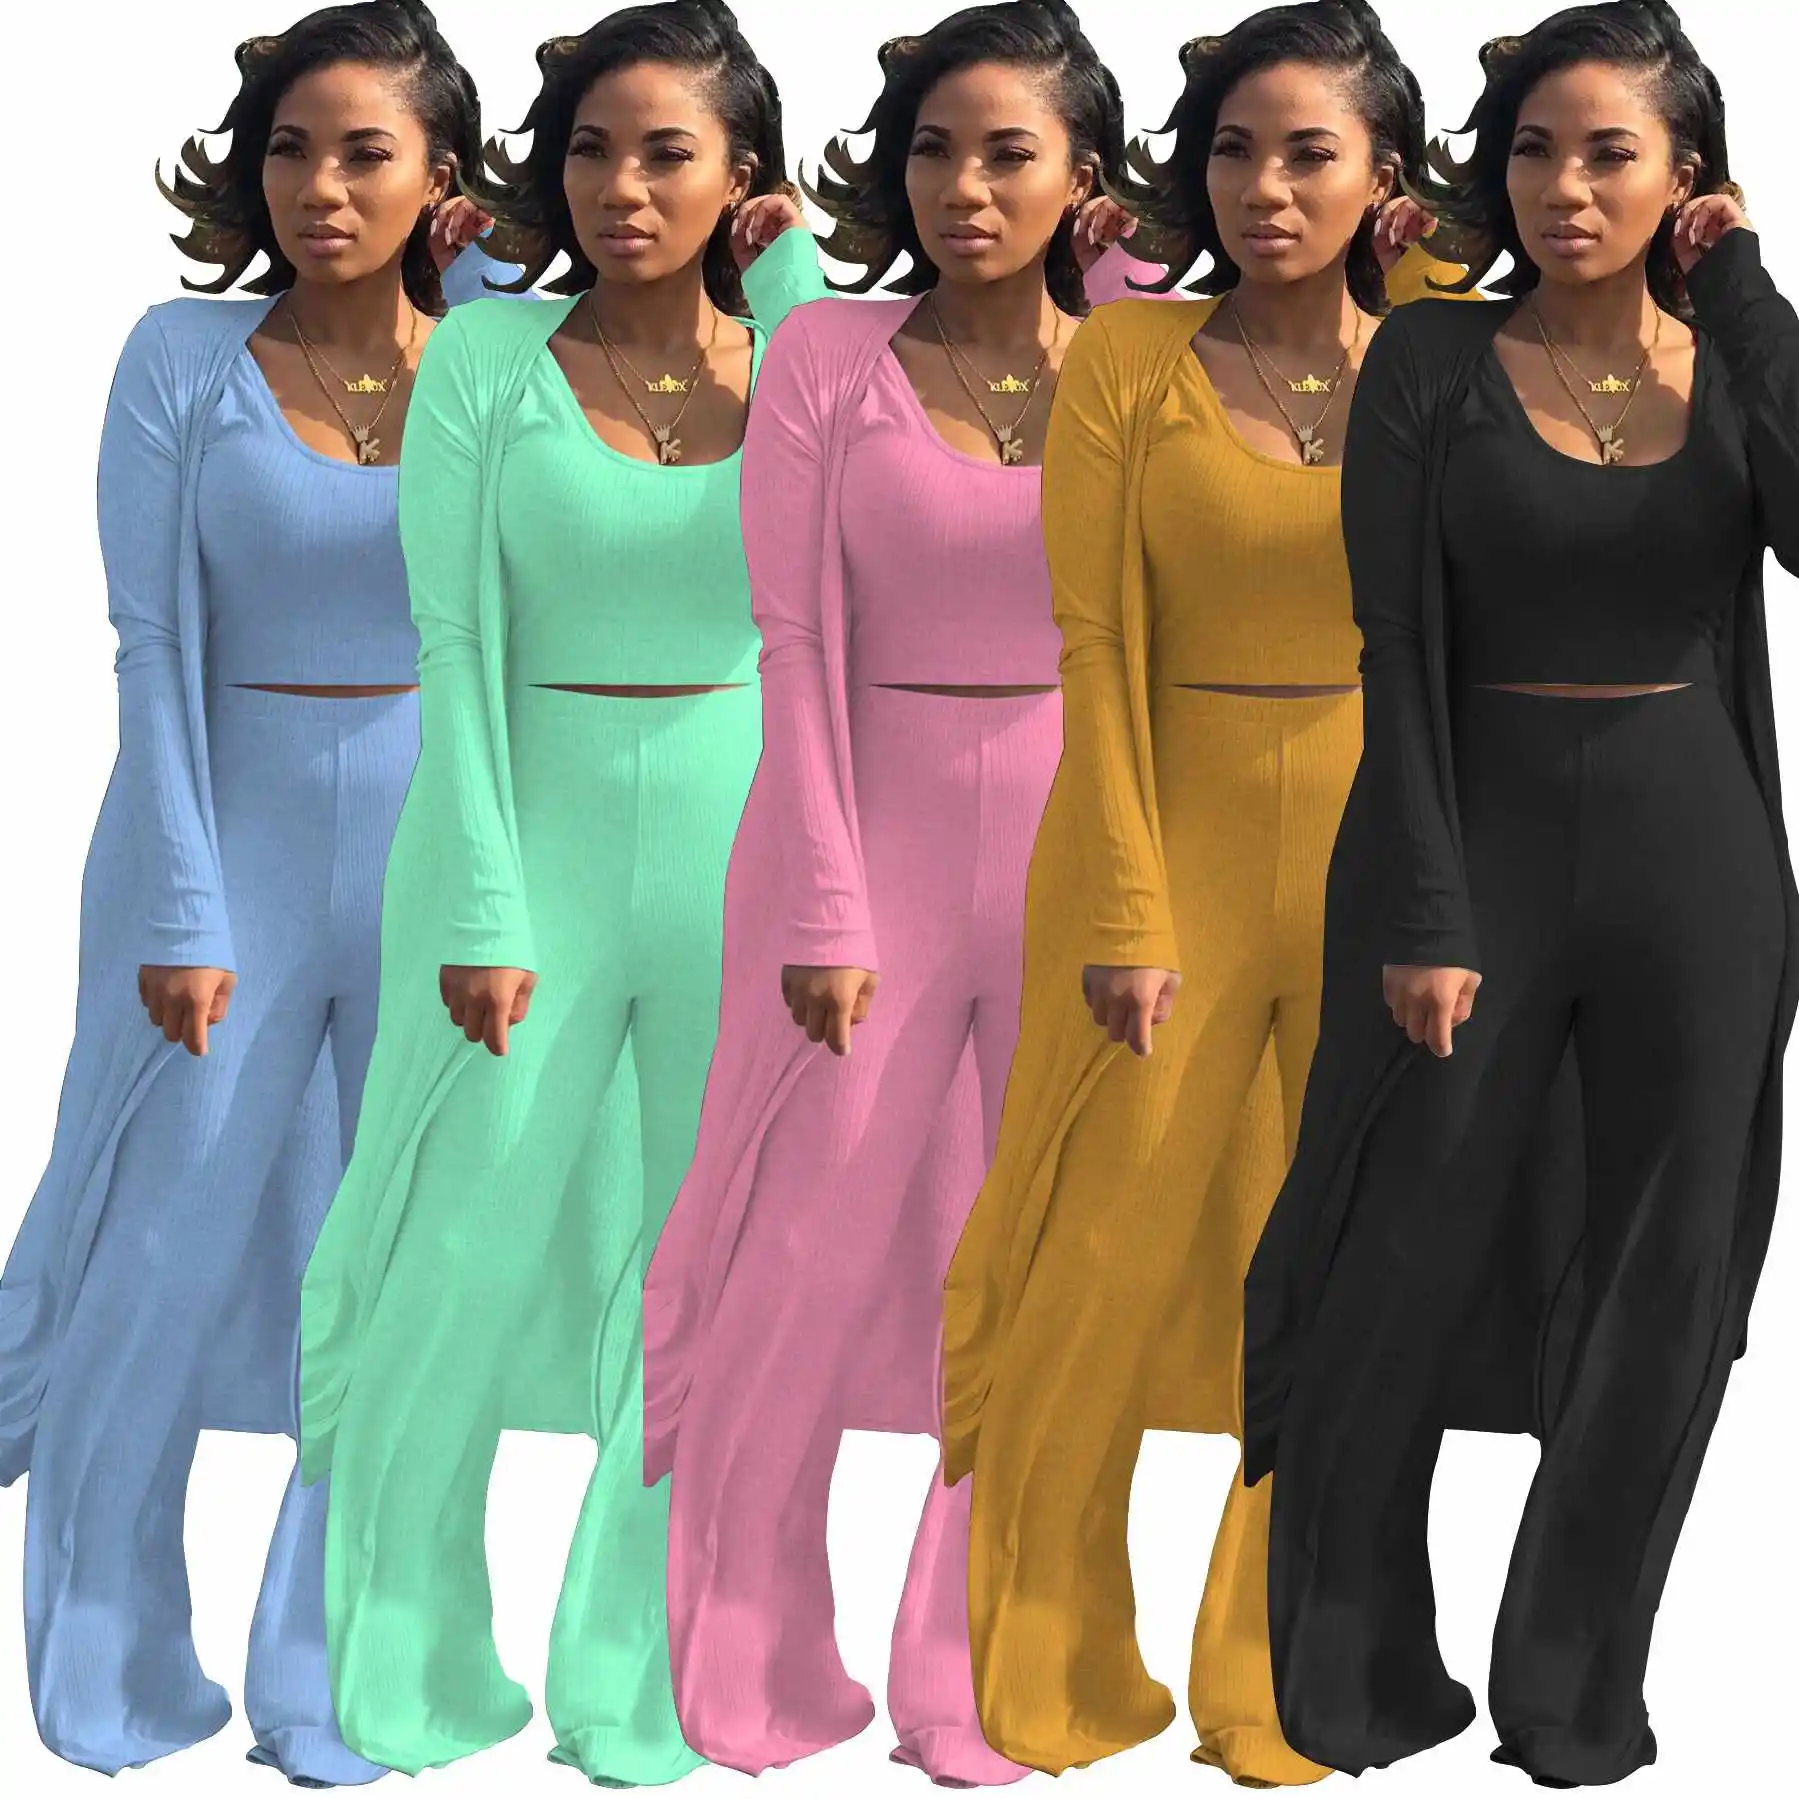 2021 패션 캐주얼 3 조각 세트 여성 의류 긴 소매 플레어 바지 세트 느슨한 디자인 여성 플러스 사이즈 코트 드레스 세트